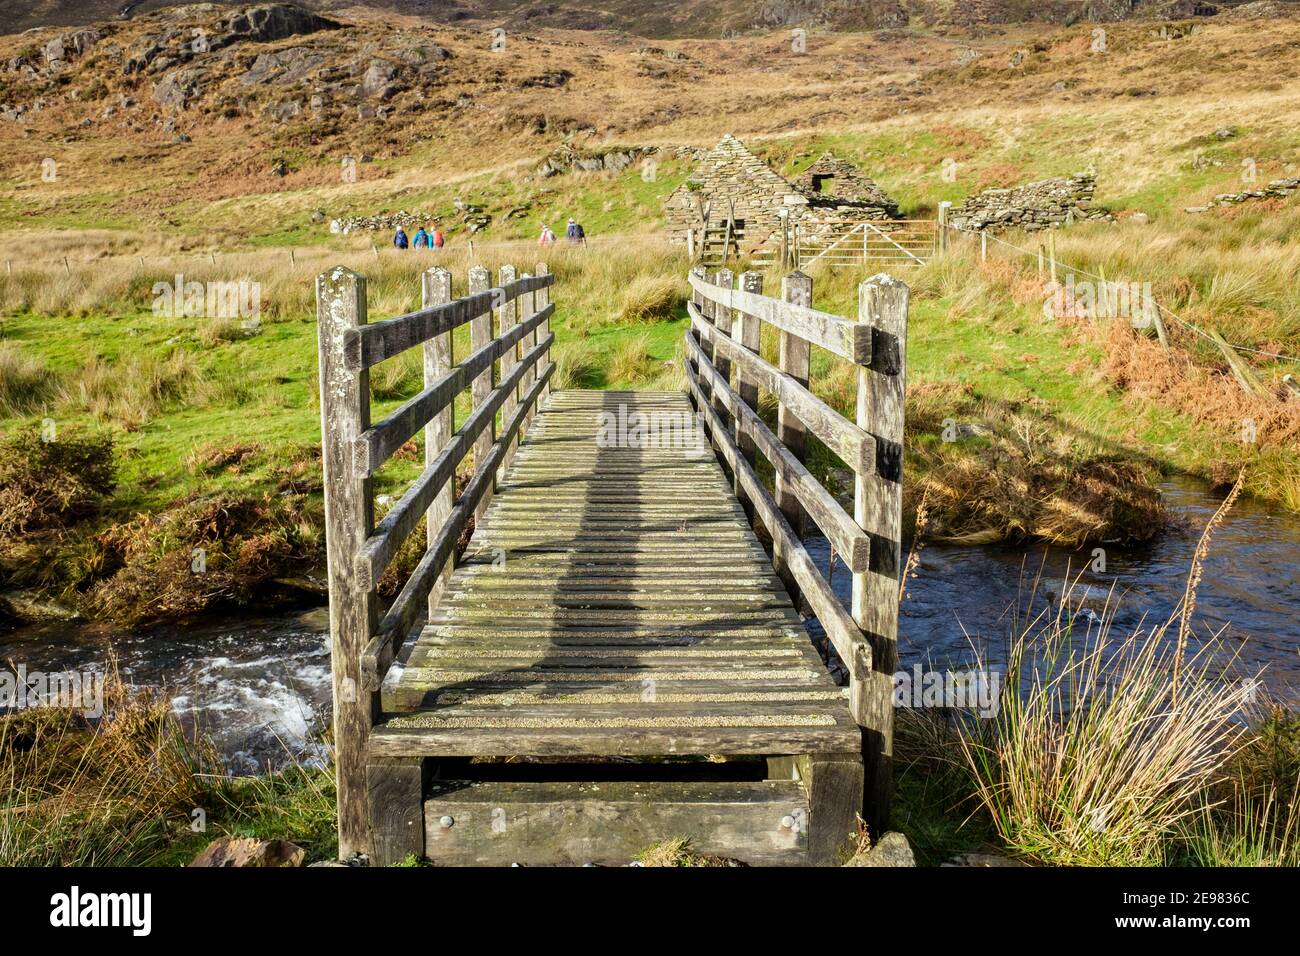 Passerelle en bois traversant un ruisseau avec des randonneurs éloignés sur le sentier du parc national de Snowdonia. Bethania, Beddgelert, Gwynedd, pays de Galles, Royaume-Uni, Grande-Bretagne Banque D'Images